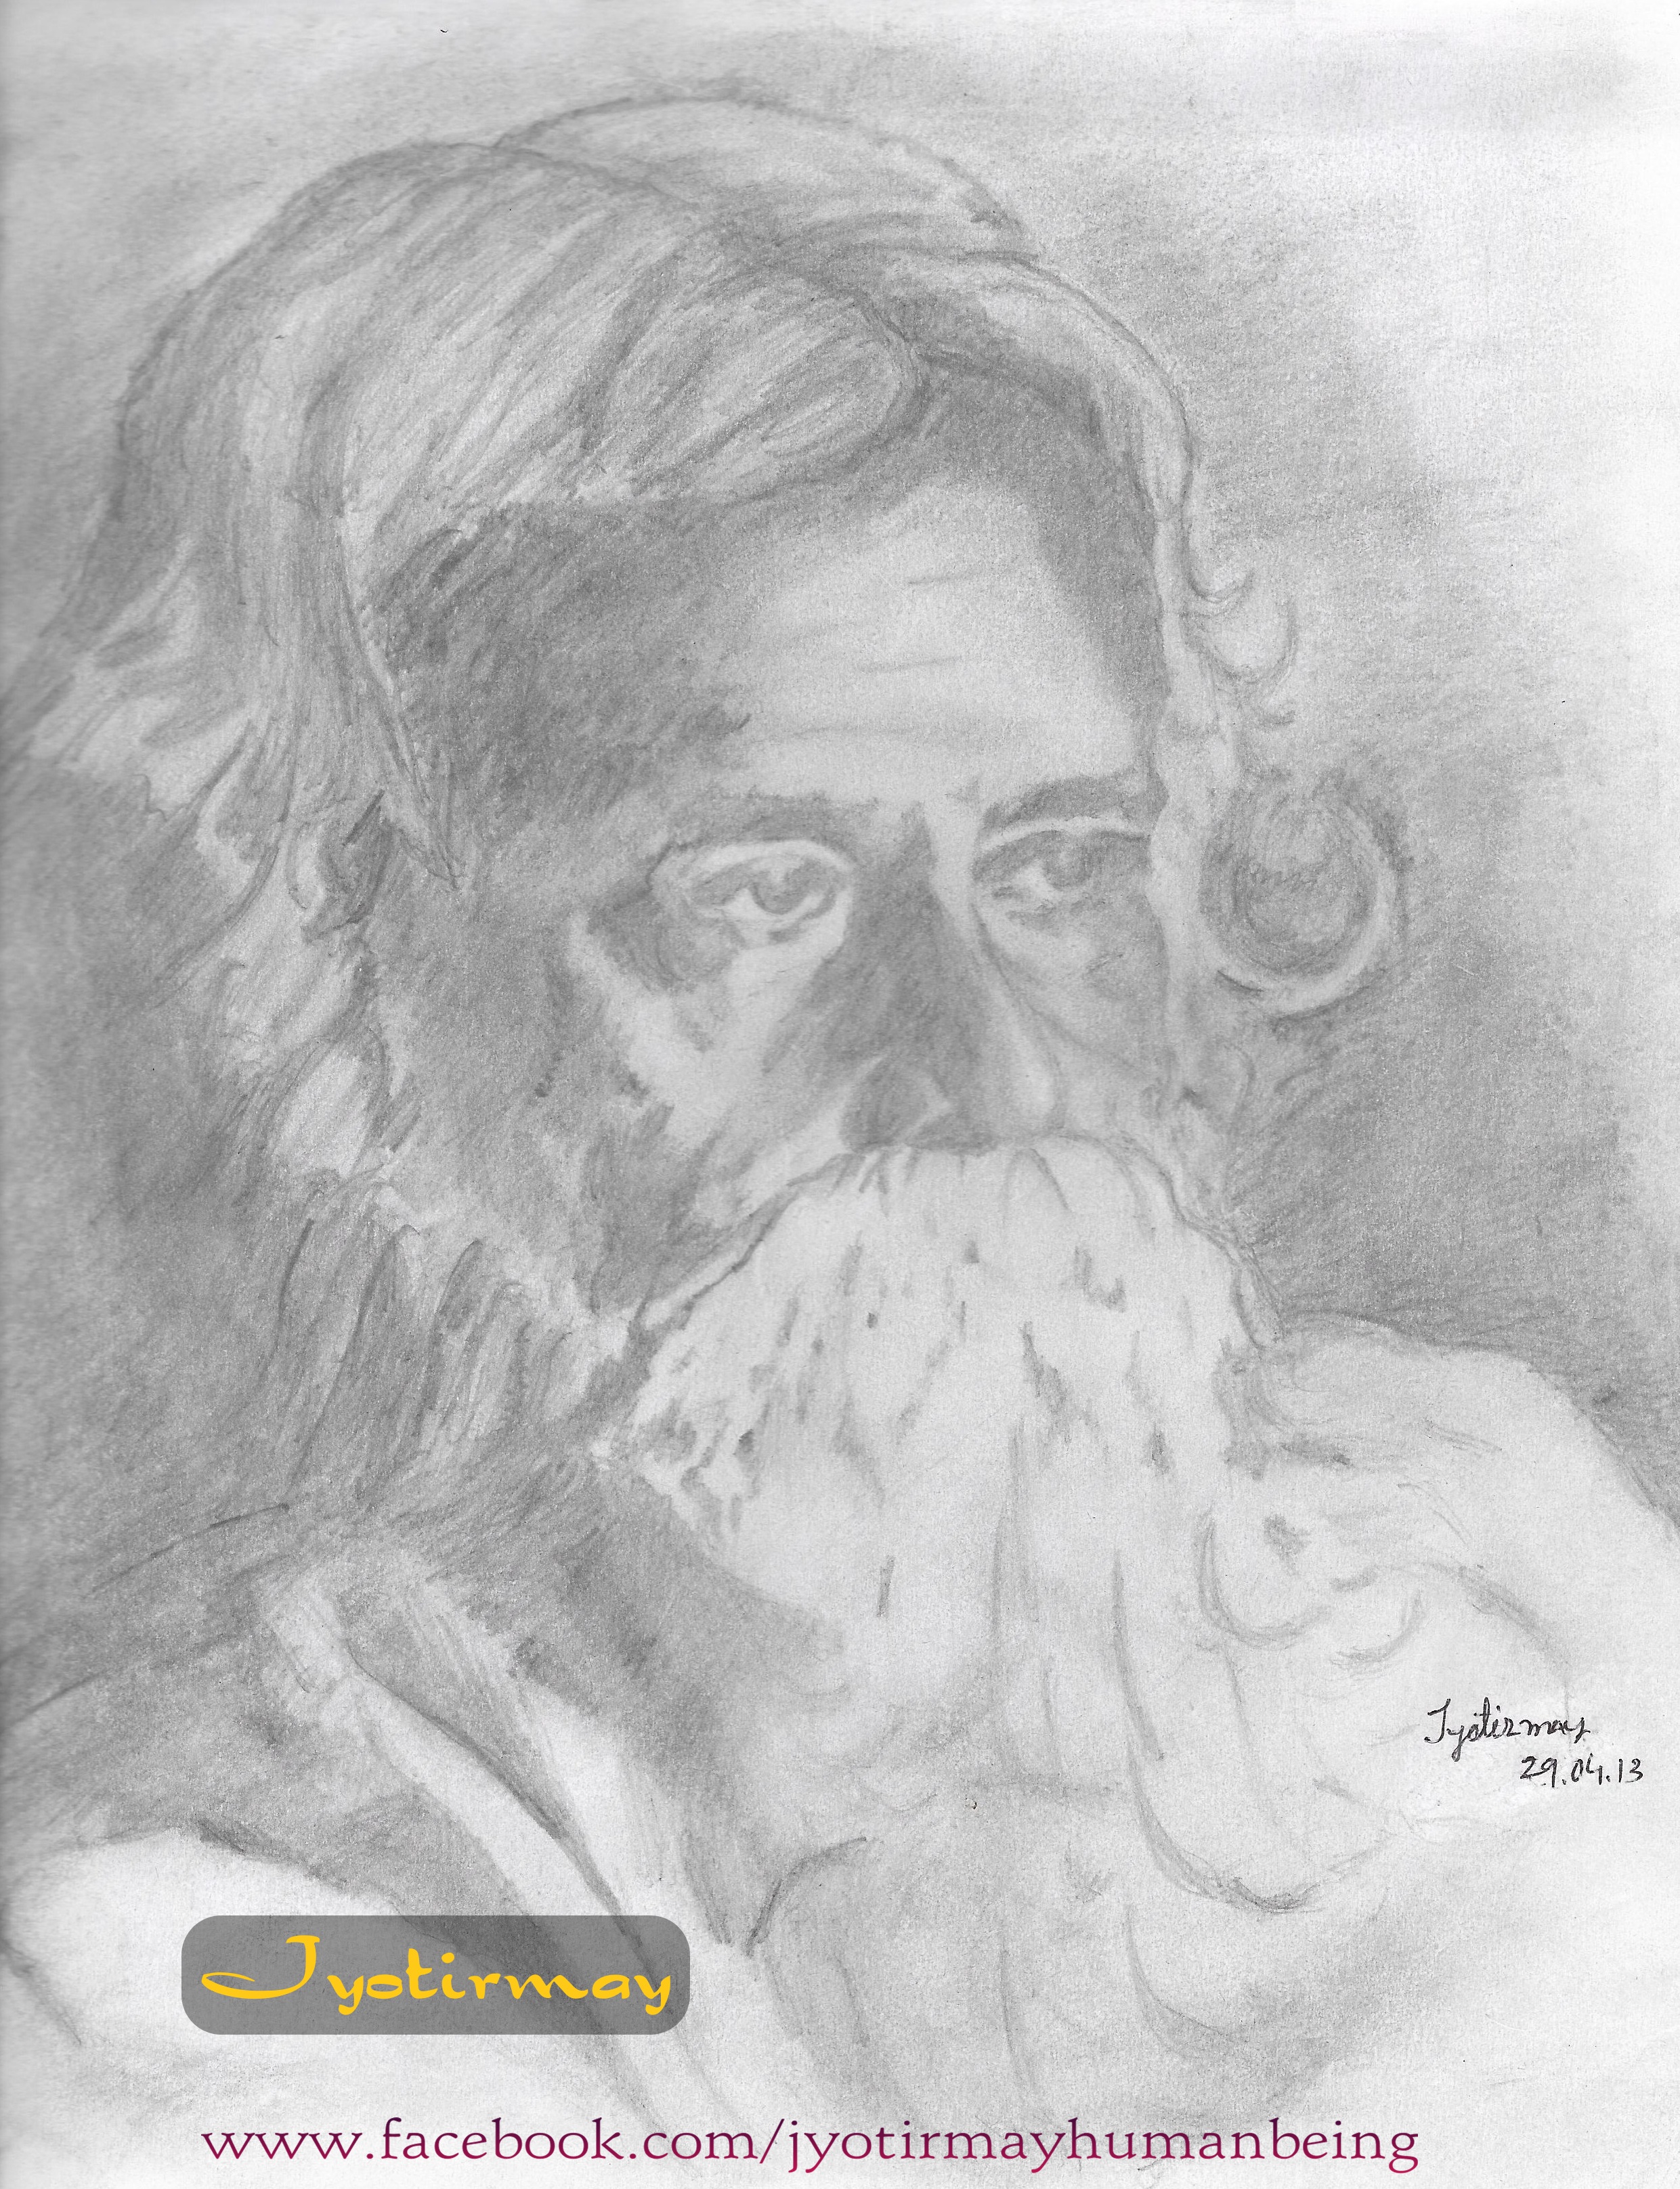 Rabindranath Tagore.jpg